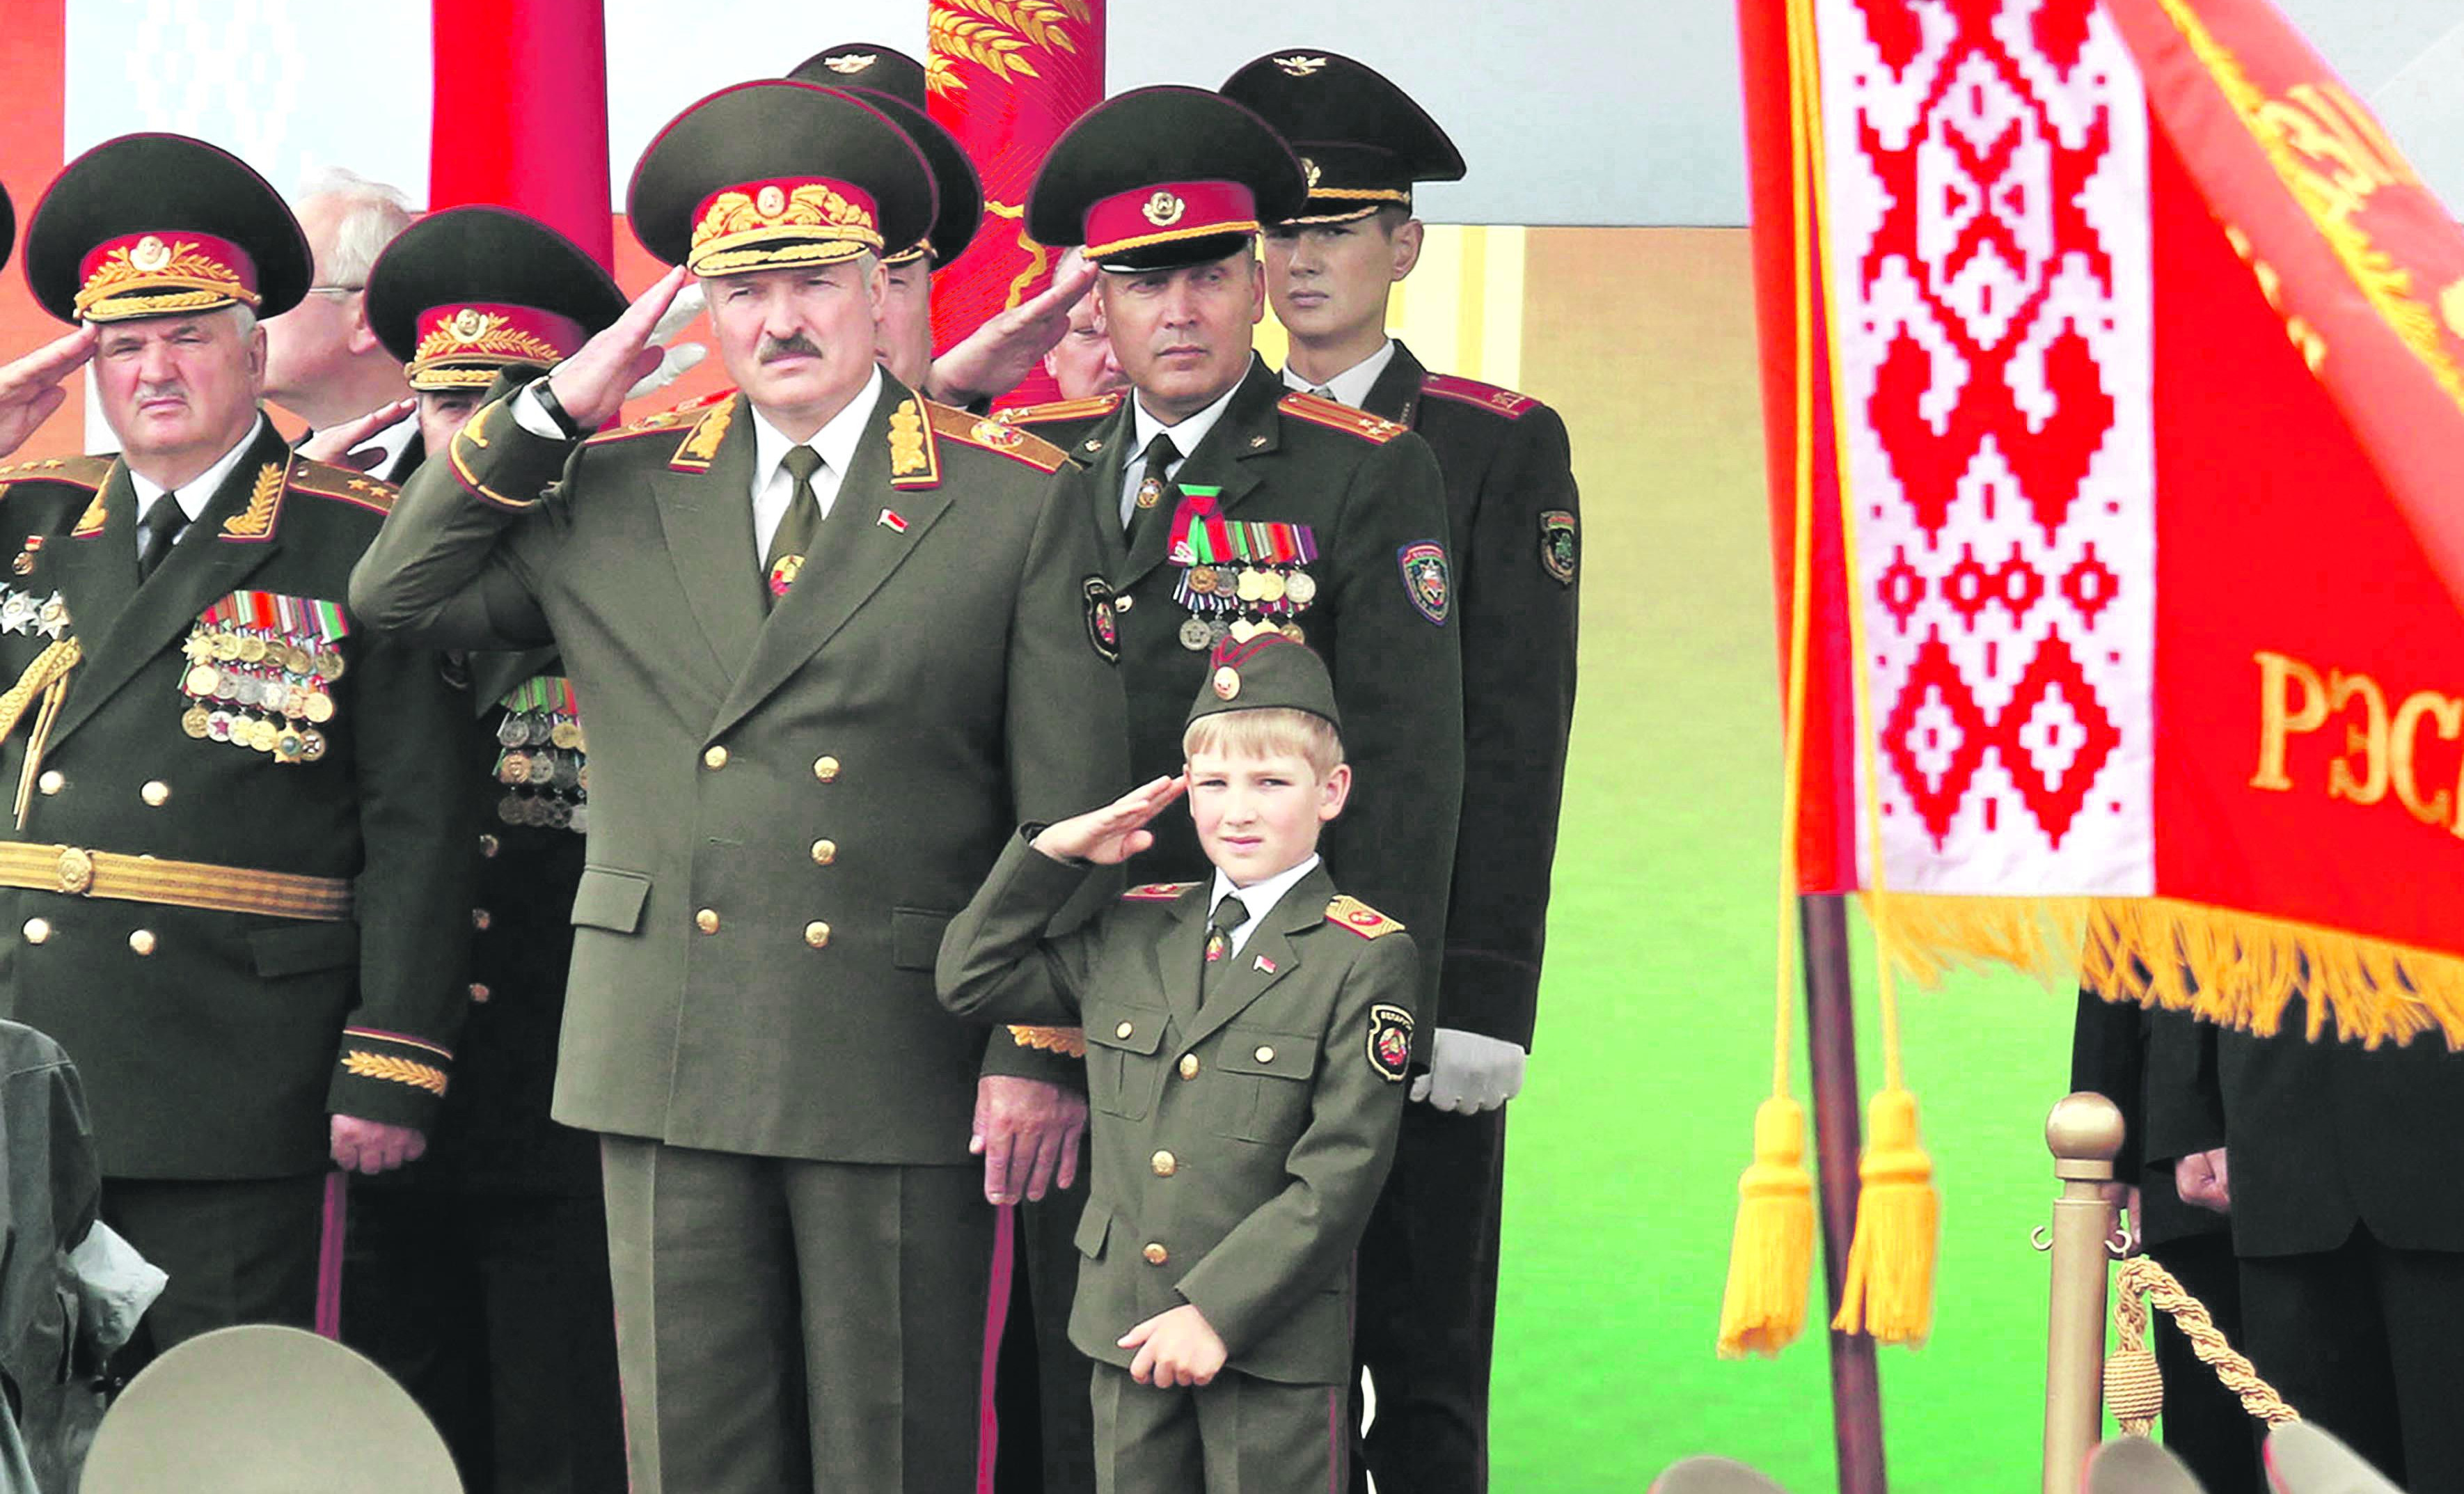 NAJVEĆA MORA ZAPADA, PONOVO SE RAĐA SSSR! Lukašenko otkrio da "crvena imperija" biti obnovljena, NEĆE NAPRAVITI GREŠKE KOJE SU JE KOŠTALE KRAHA!